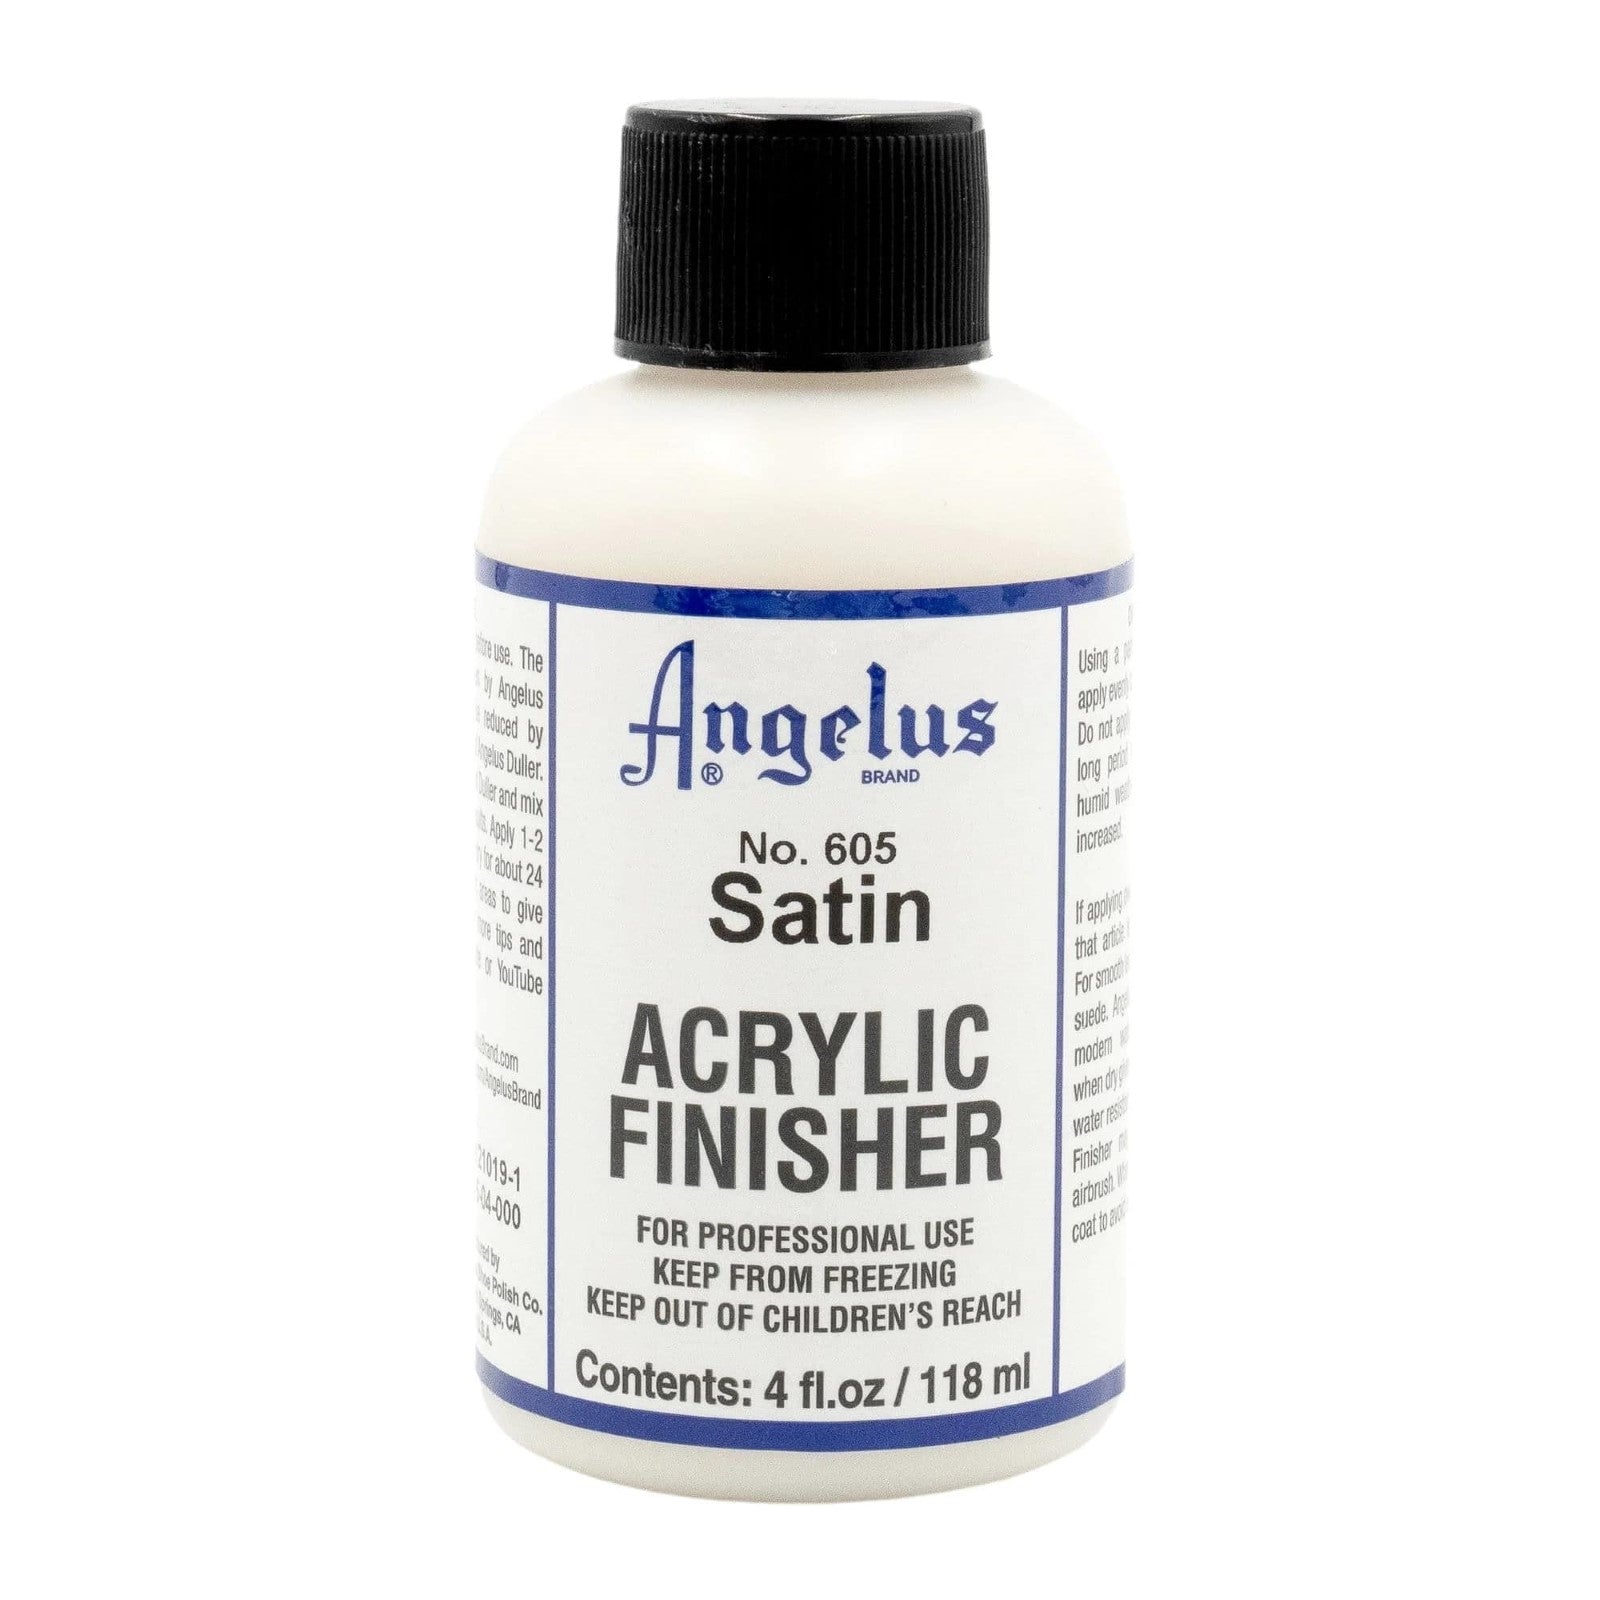 Angelus Acrylic Leather Paint 4 oz